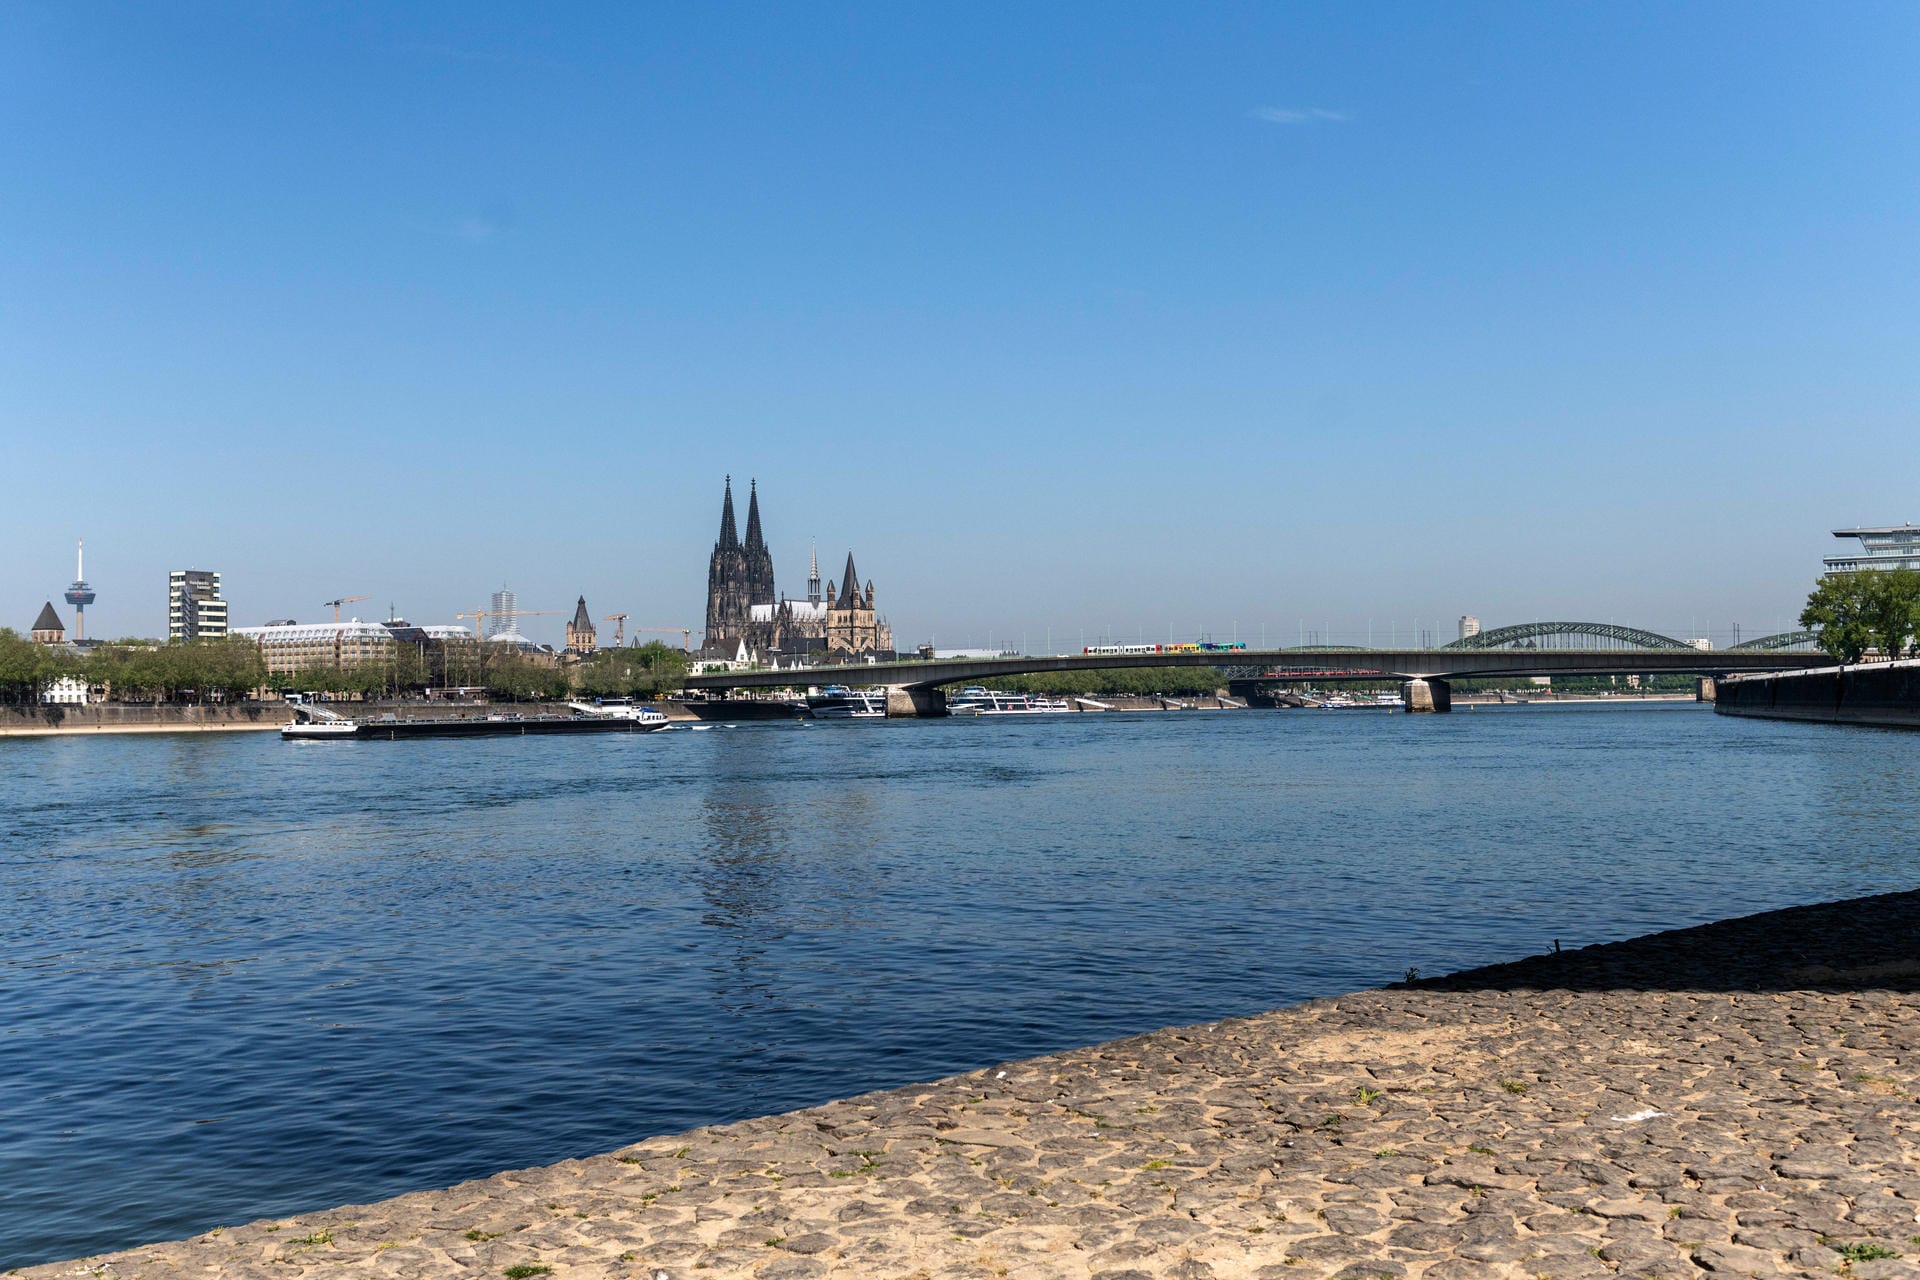 Blick an der Severinsbrücke aus auf die Silhouette der Stadt: Für dieses Rheinpanorama sind die Stadt und der Fluss berühmt.